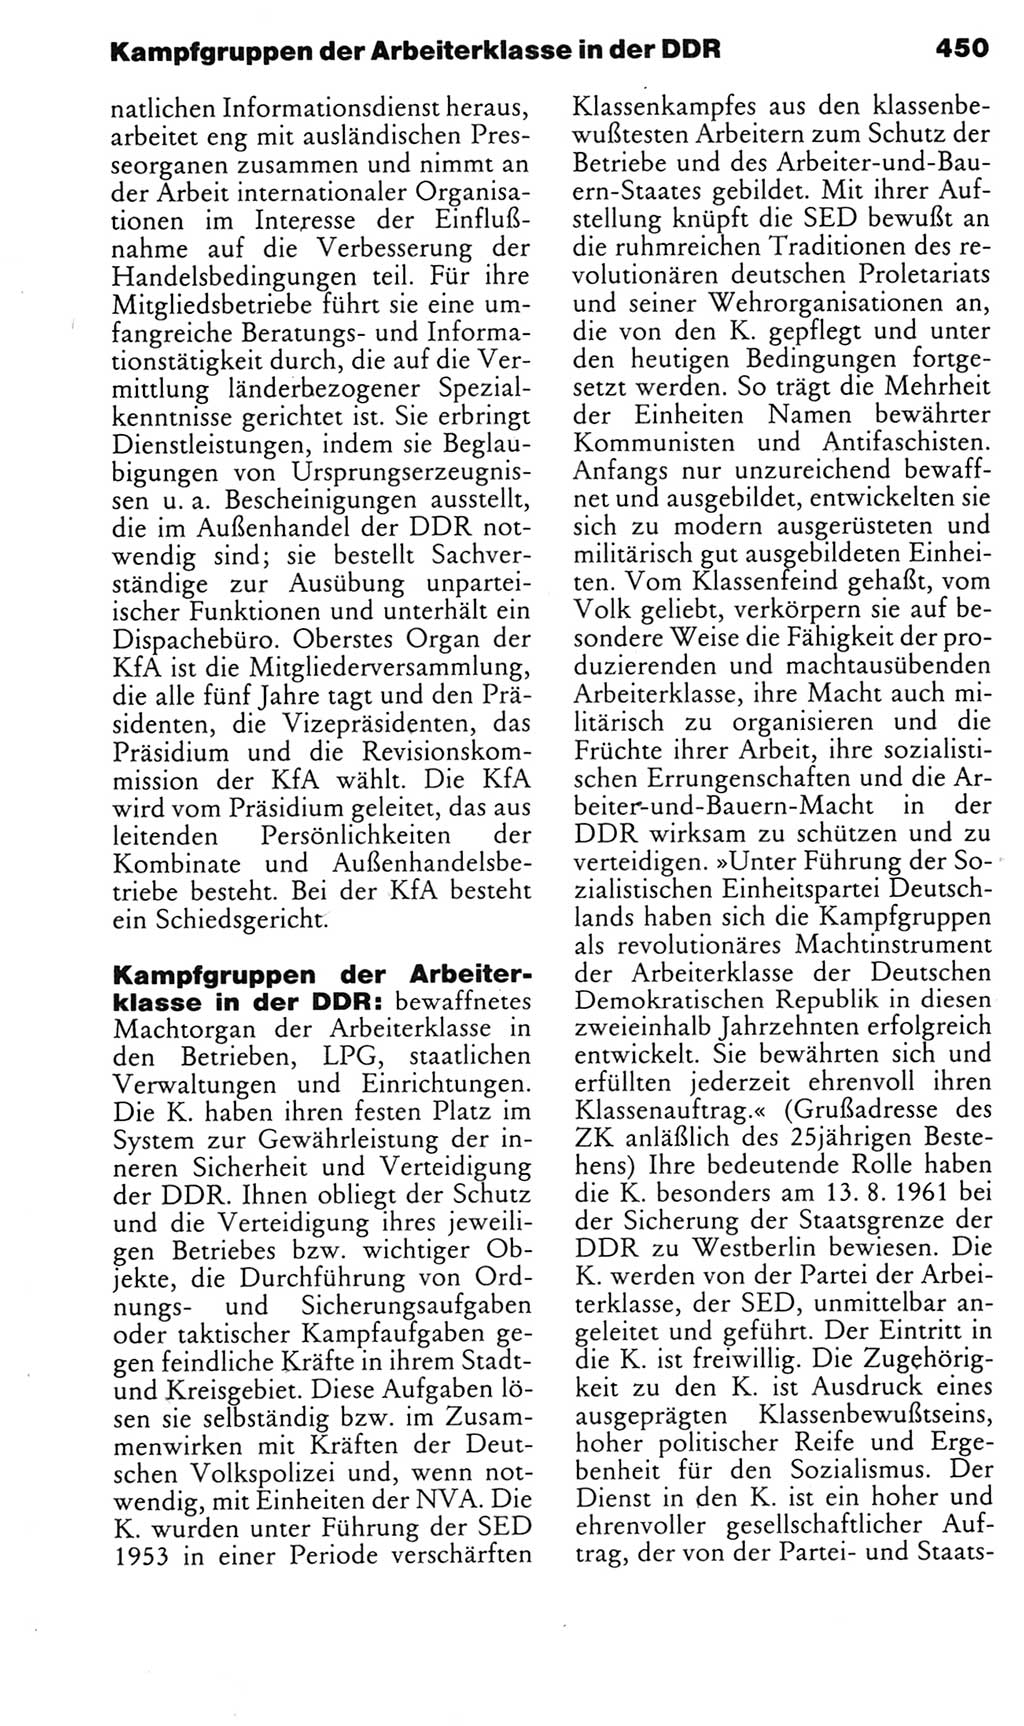 Kleines politisches Wörterbuch [Deutsche Demokratische Republik (DDR)] 1985, Seite 450 (Kl. pol. Wb. DDR 1985, S. 450)